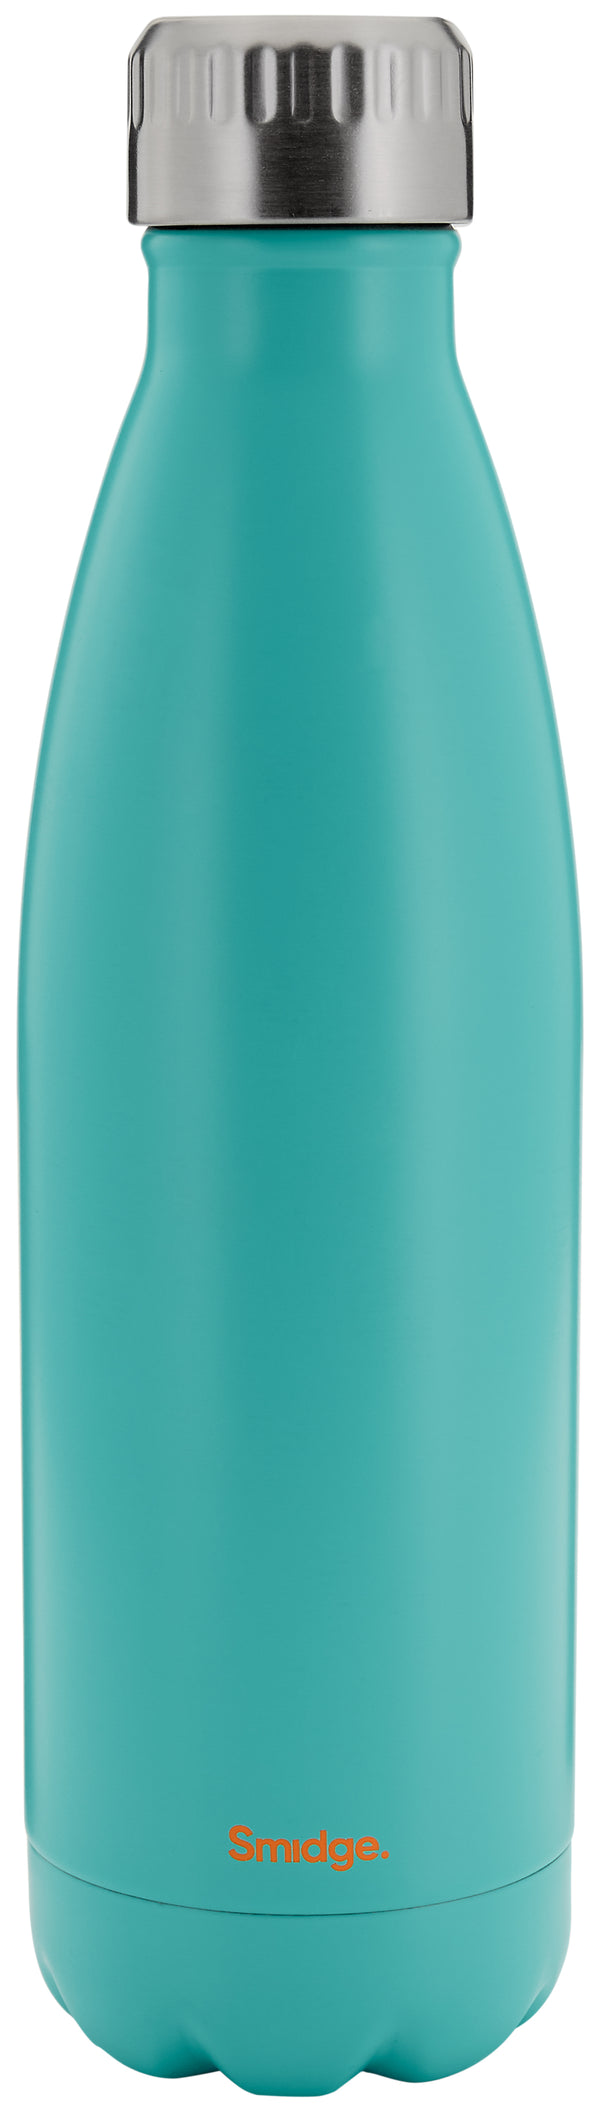 Bottle 500ml - Aqua